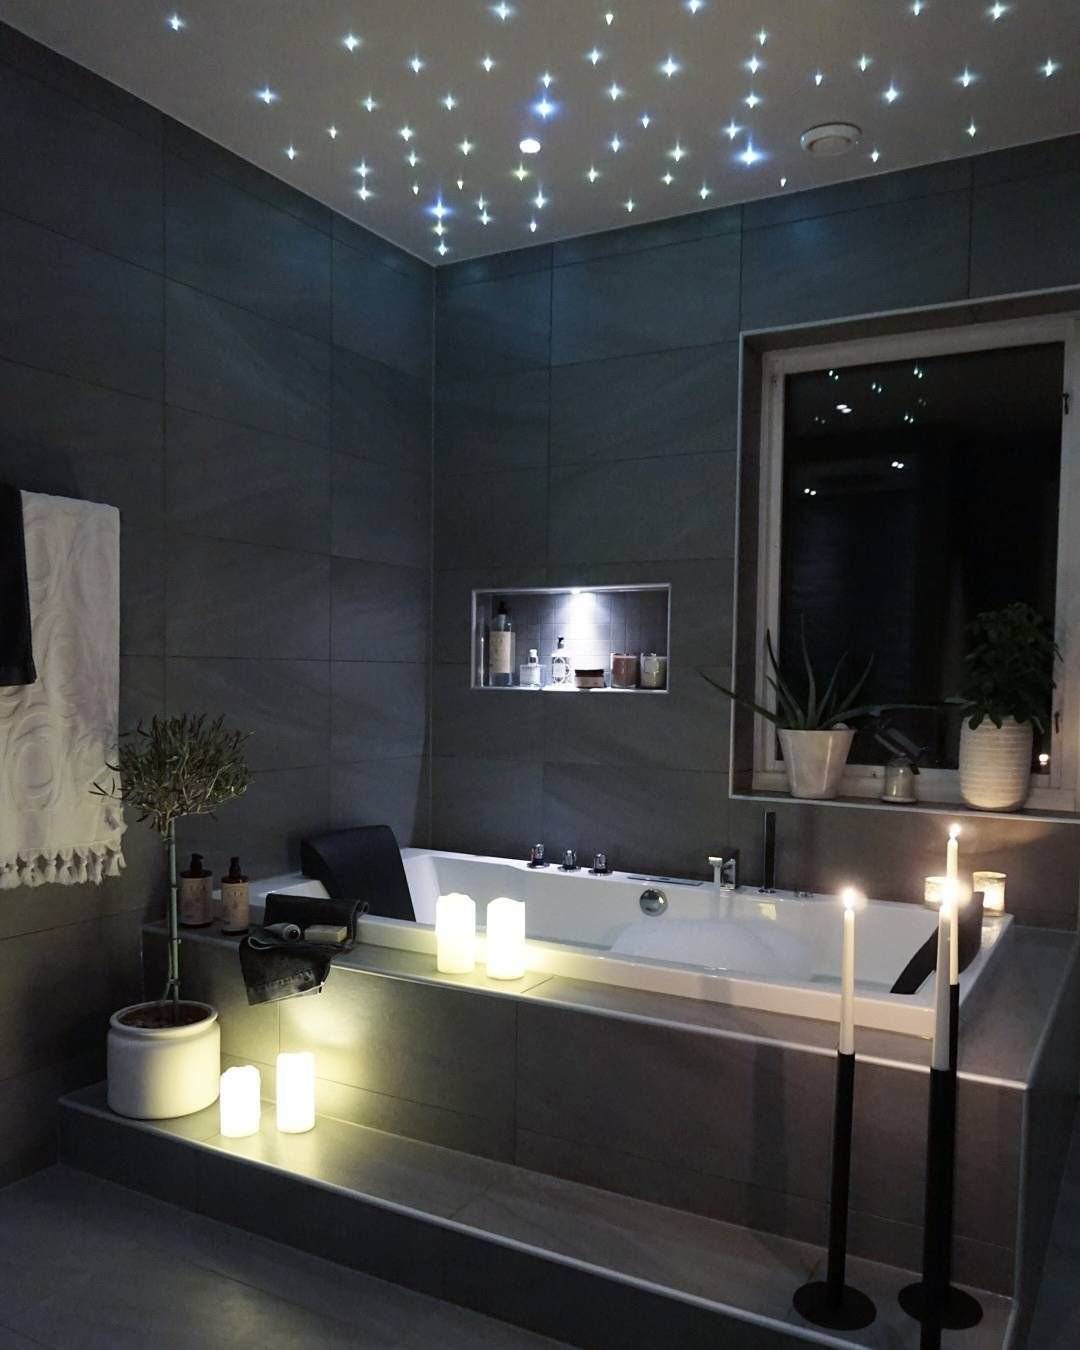 Советы по устройству освещения в ванной комнате, идеи, рекомендации